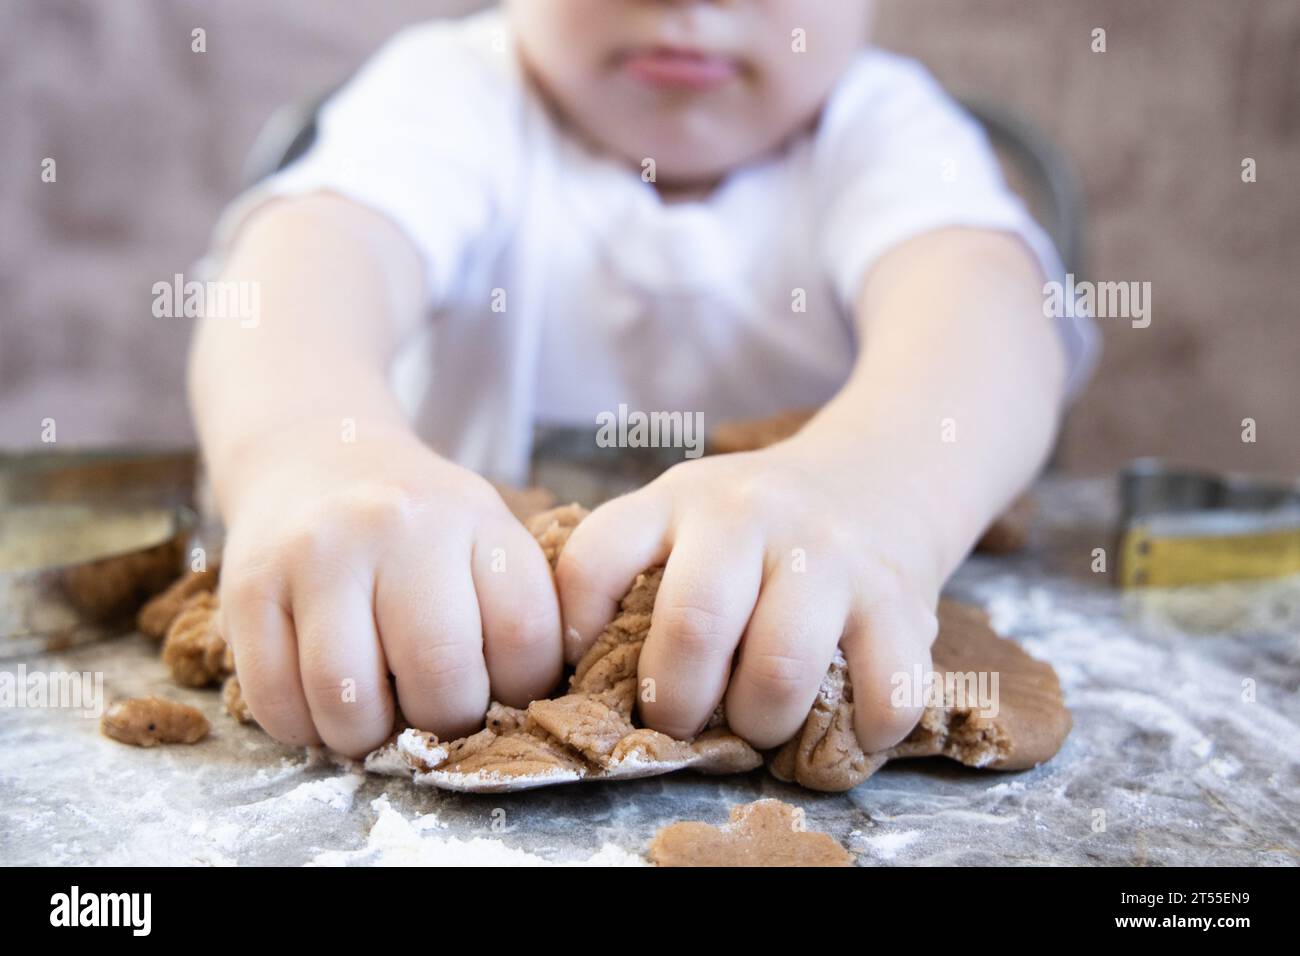 Un petit garçon fait des biscuits au gingembre dans la cuisine Banque D'Images